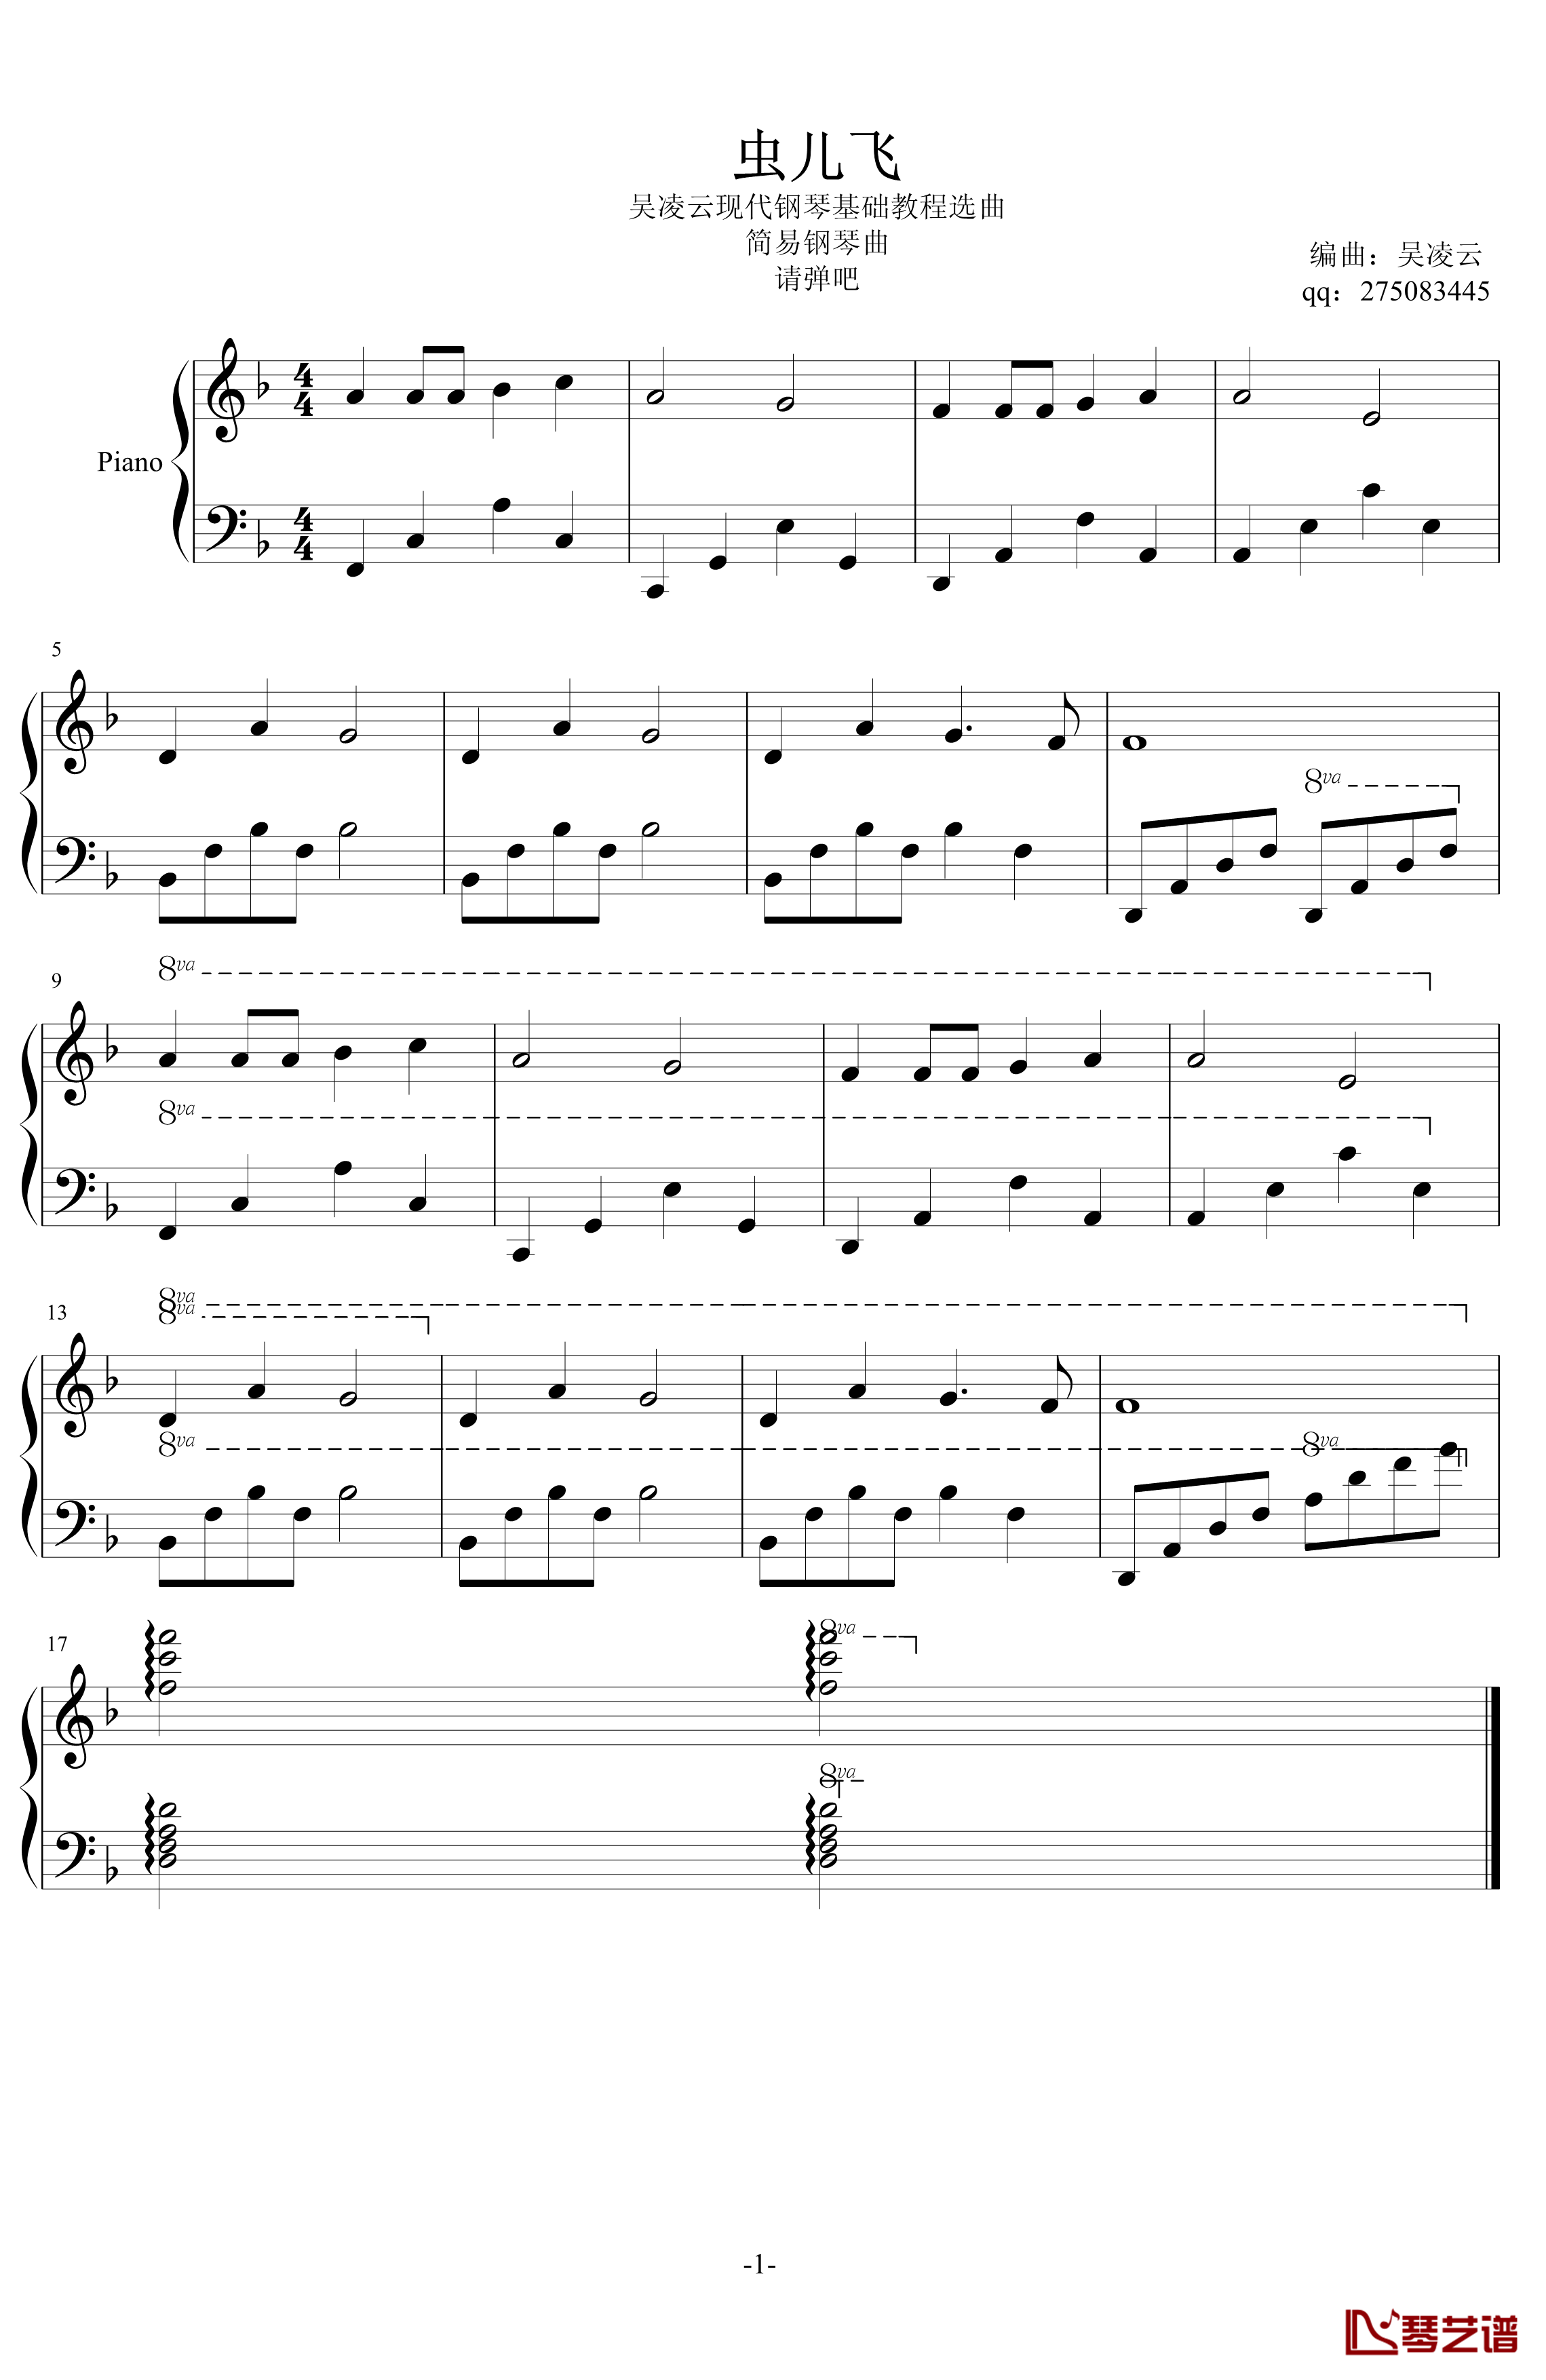 虫儿飞钢琴谱-简易钢琴谱子-新钢琴基础教程谱-郑伊健1